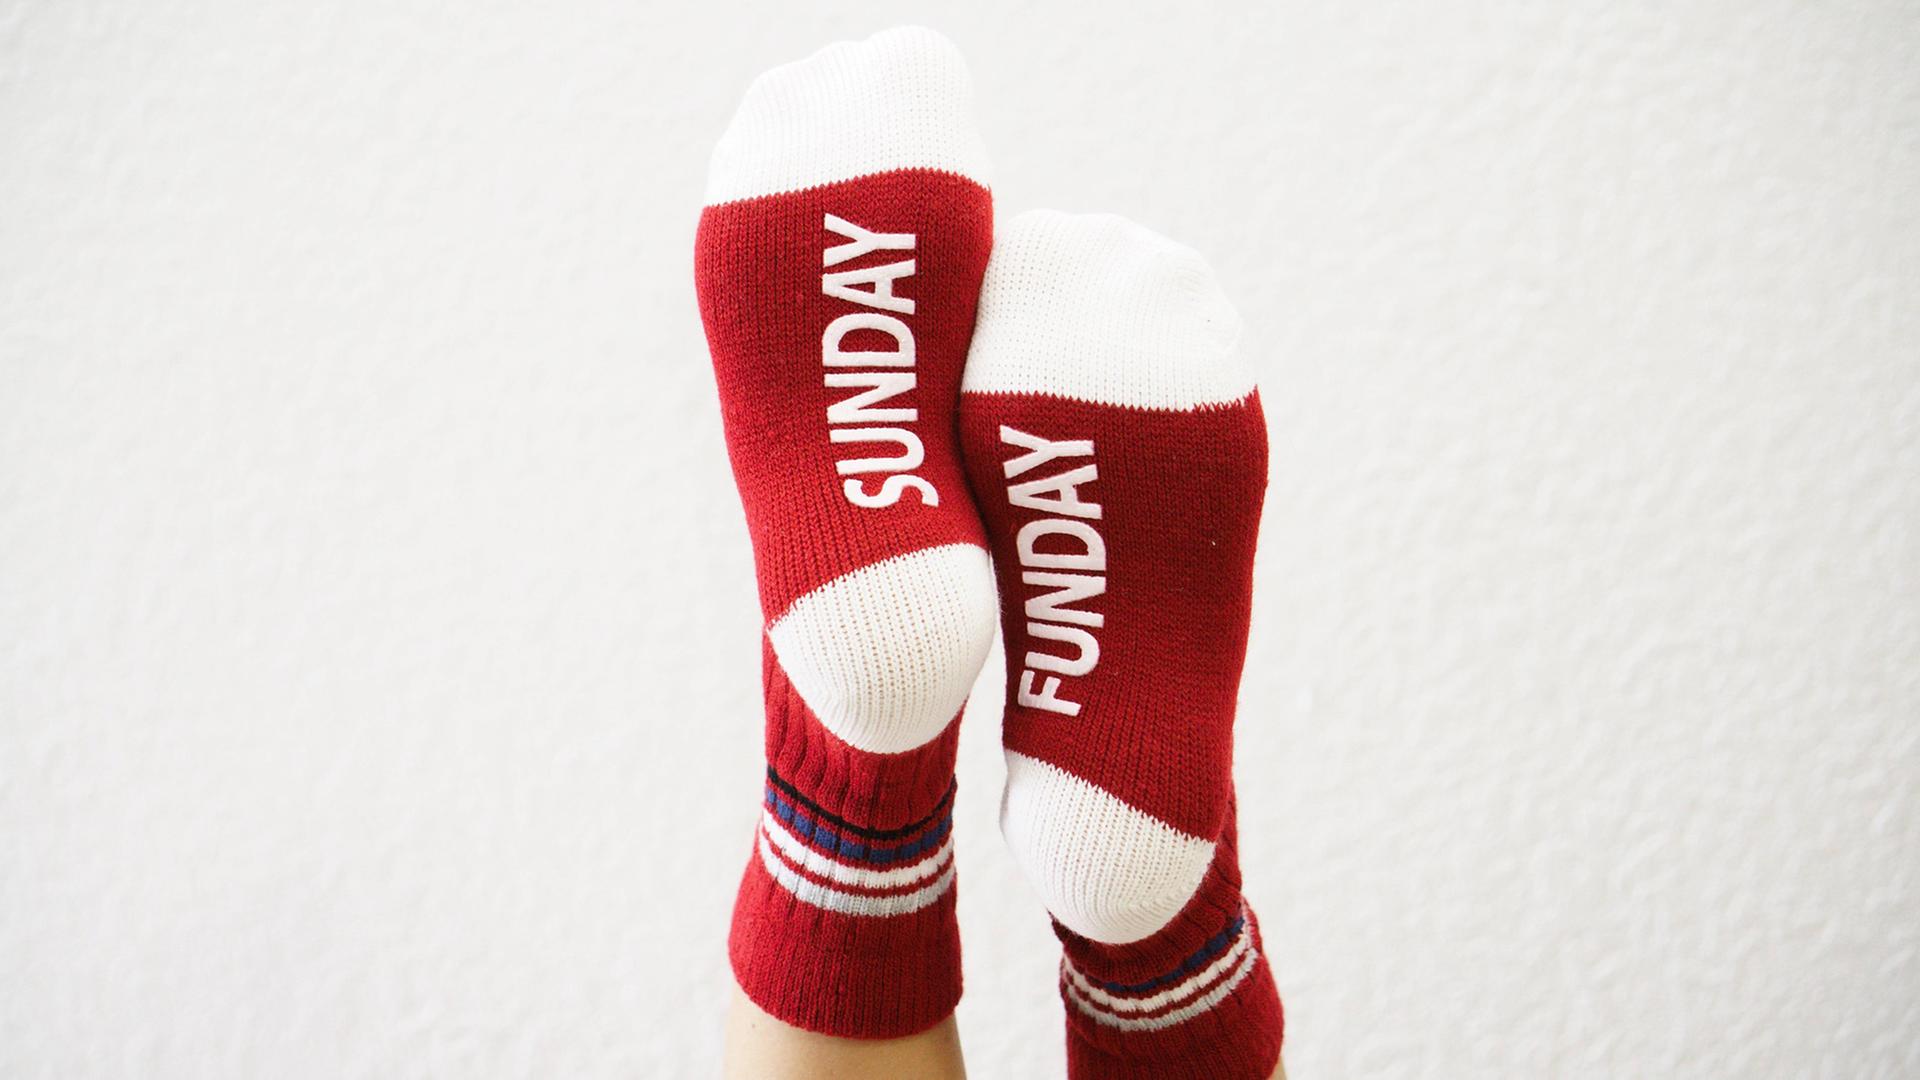 Zwei hochgelegte Füße mit roten Socken und dem Aufdruck "Sonntag"